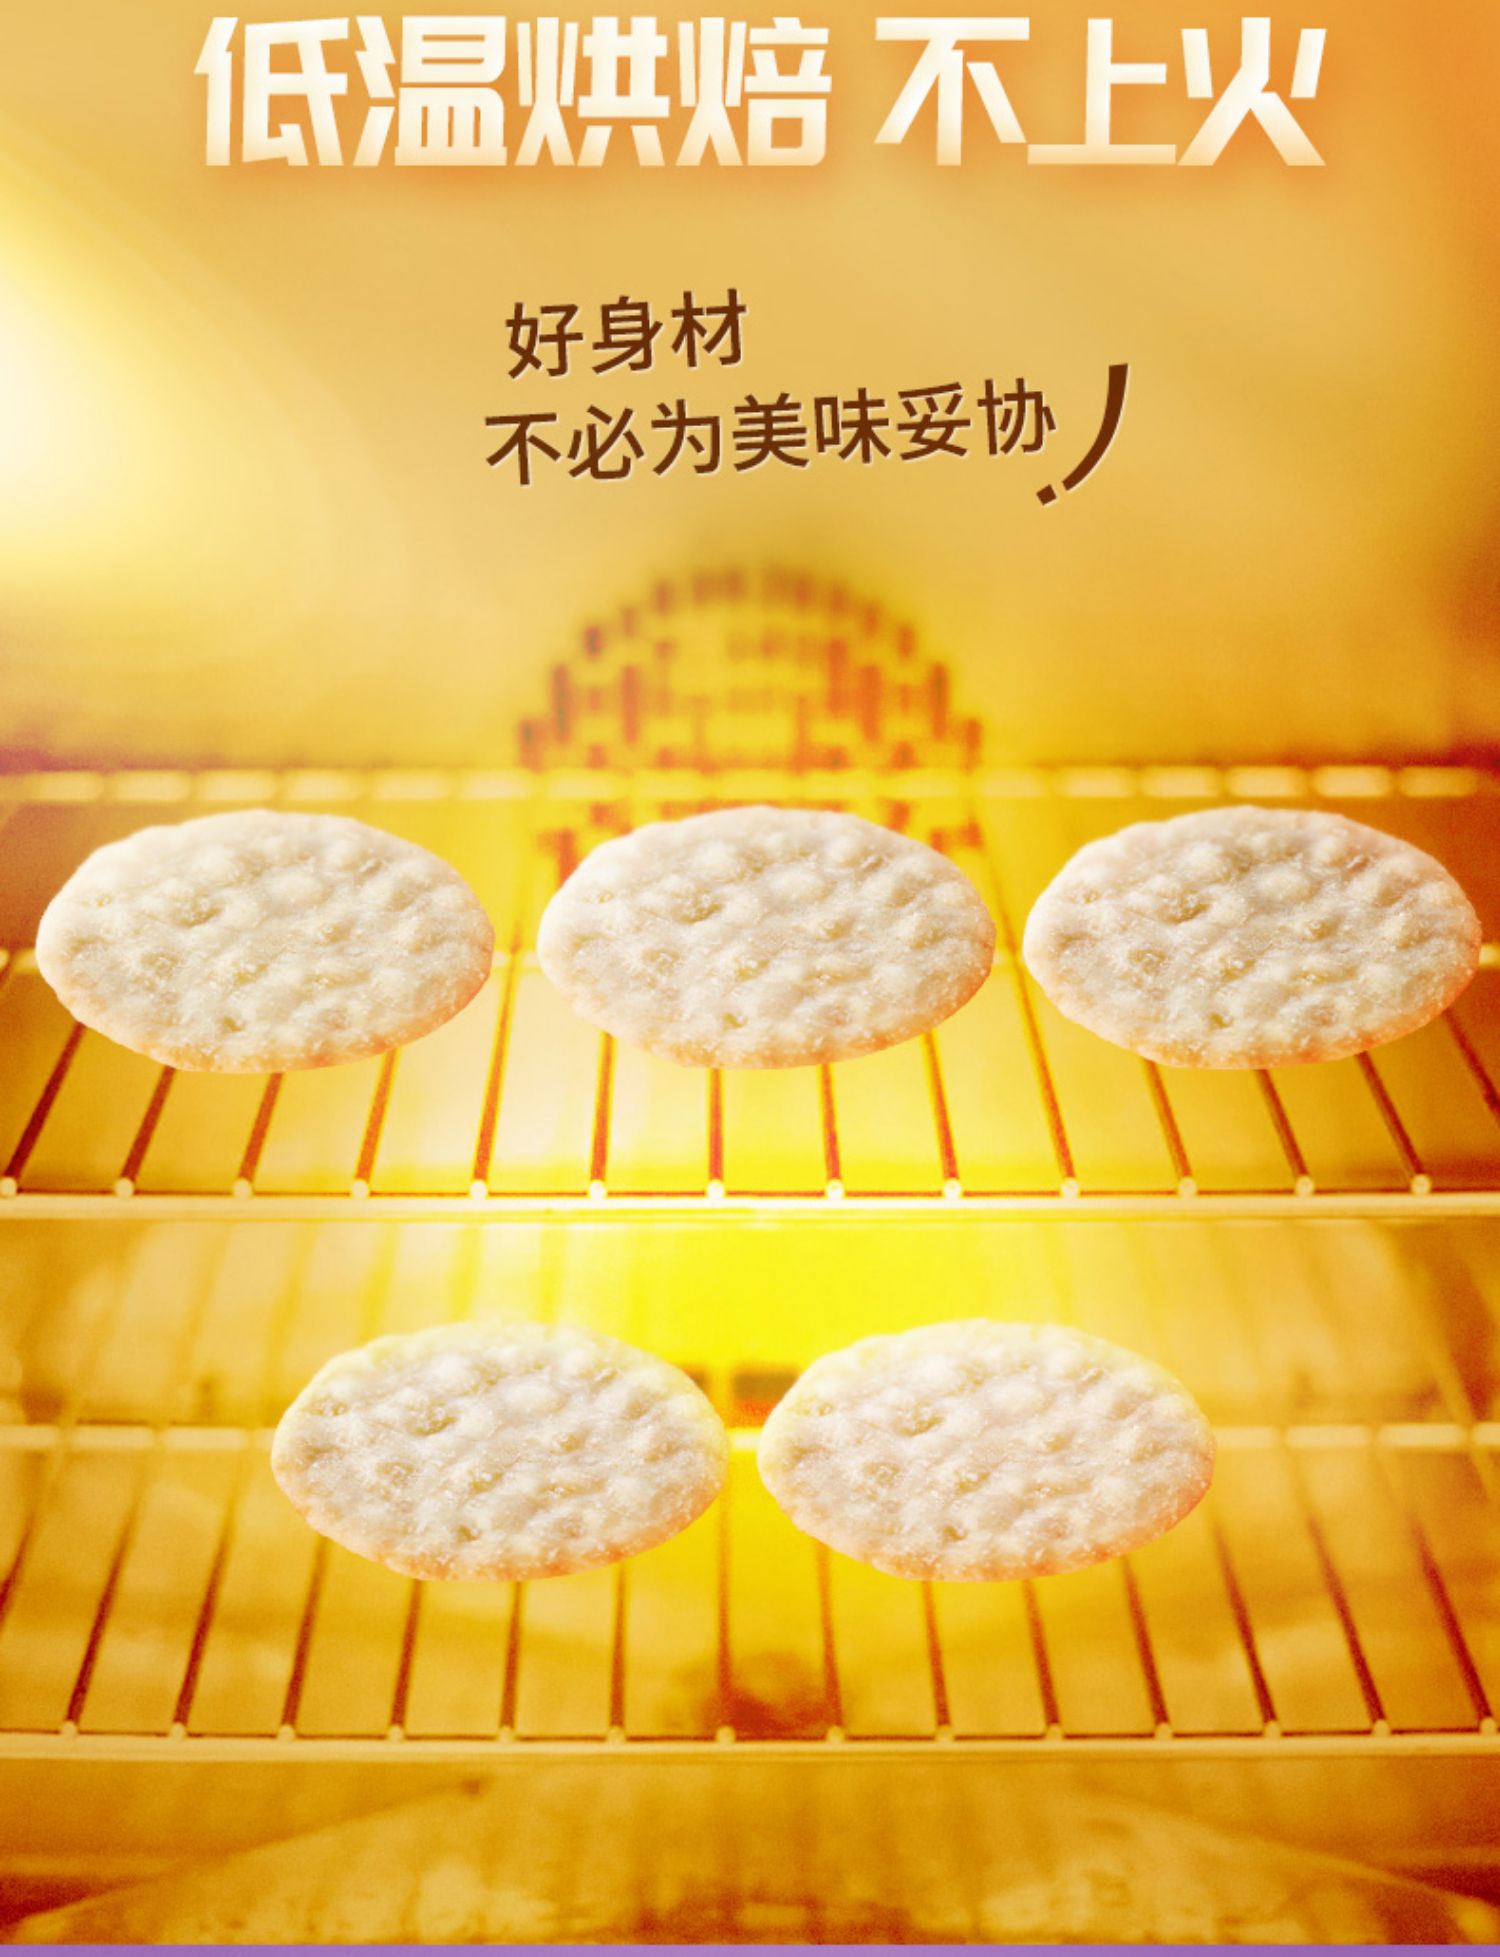 【南侨】薄脆米片饼干洋葱味下午茶100g